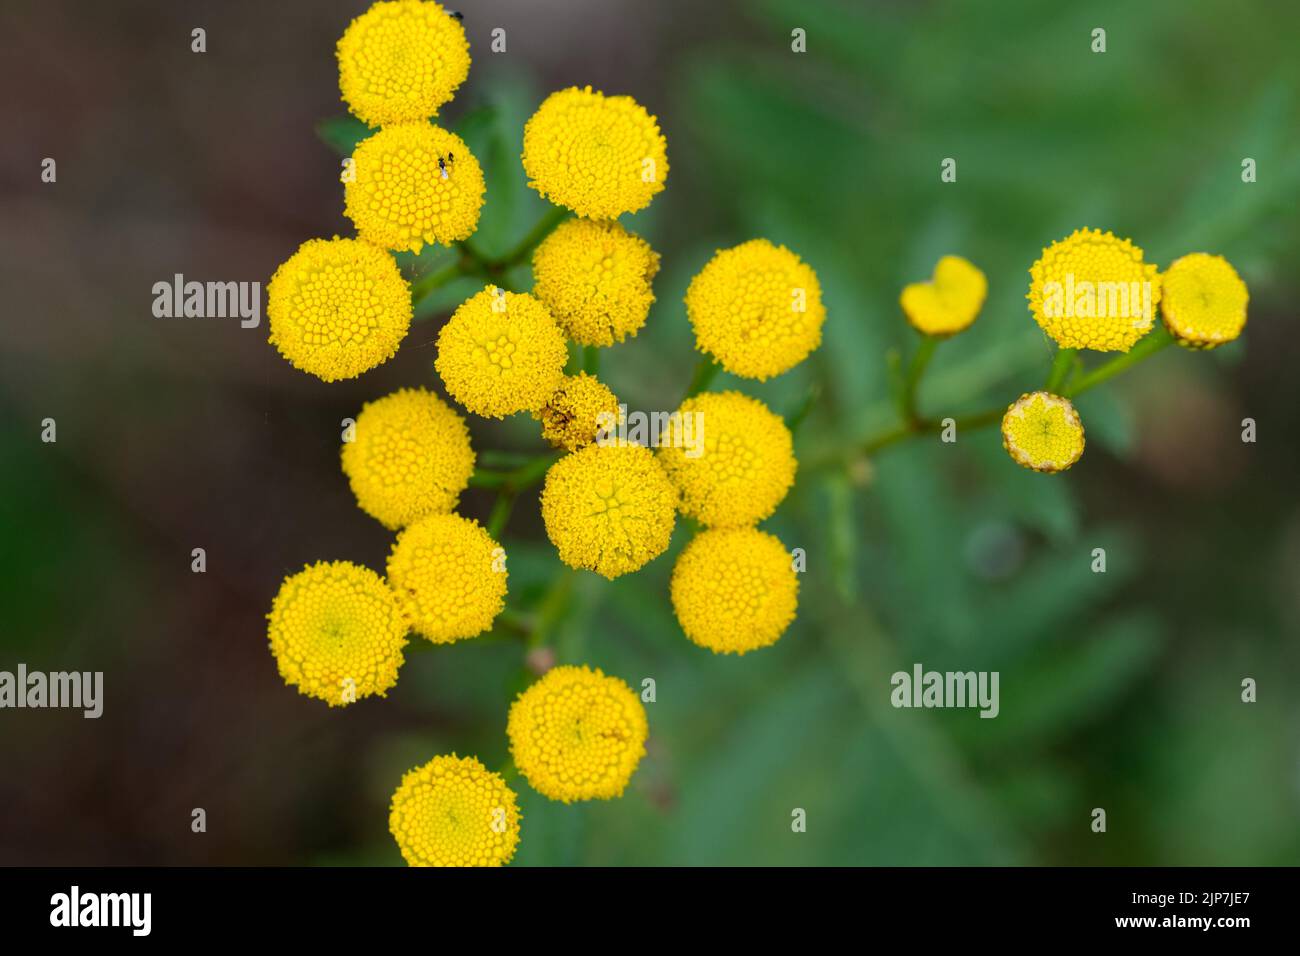 tansy, botones amargos, vaca verano amargo flores amarillas primer plano enfoque selectivo Foto de stock